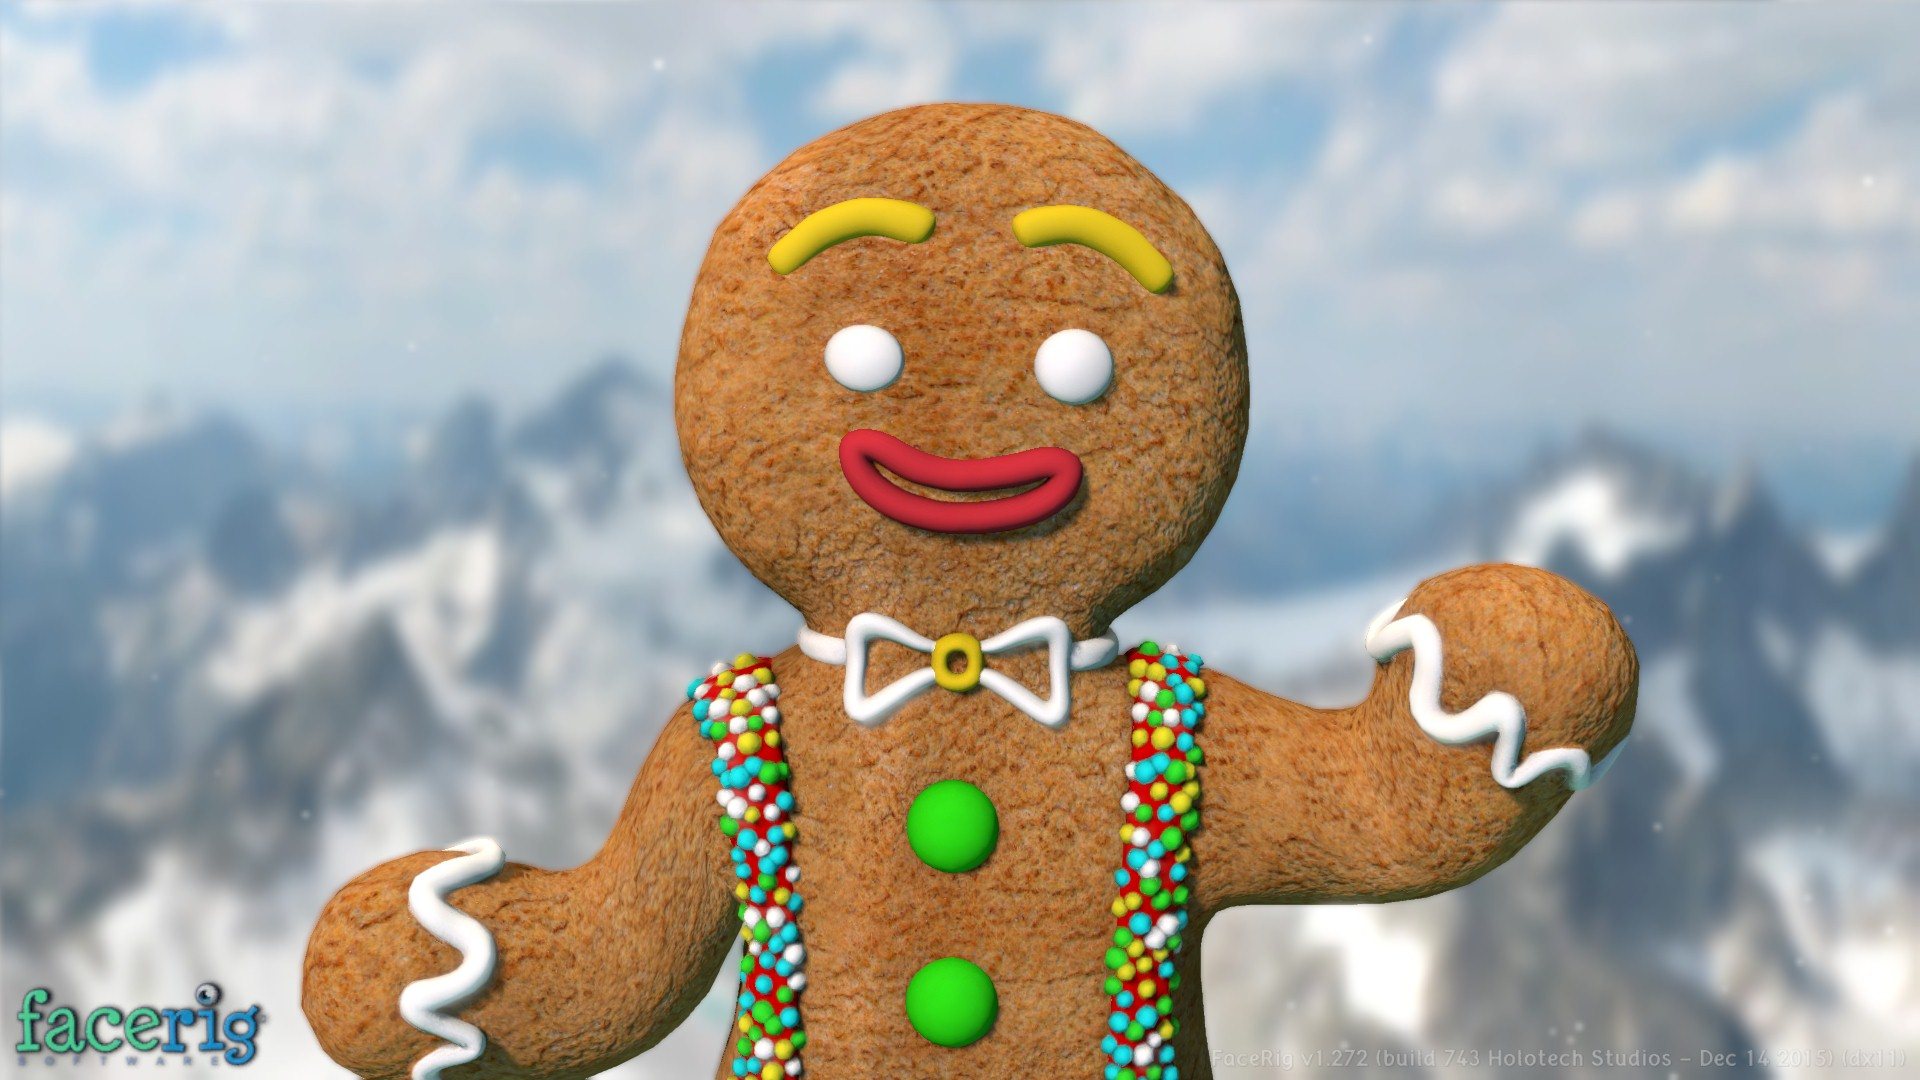 FaceRig - Winter Holidays Avatars 2015 DLC Steam CD Key